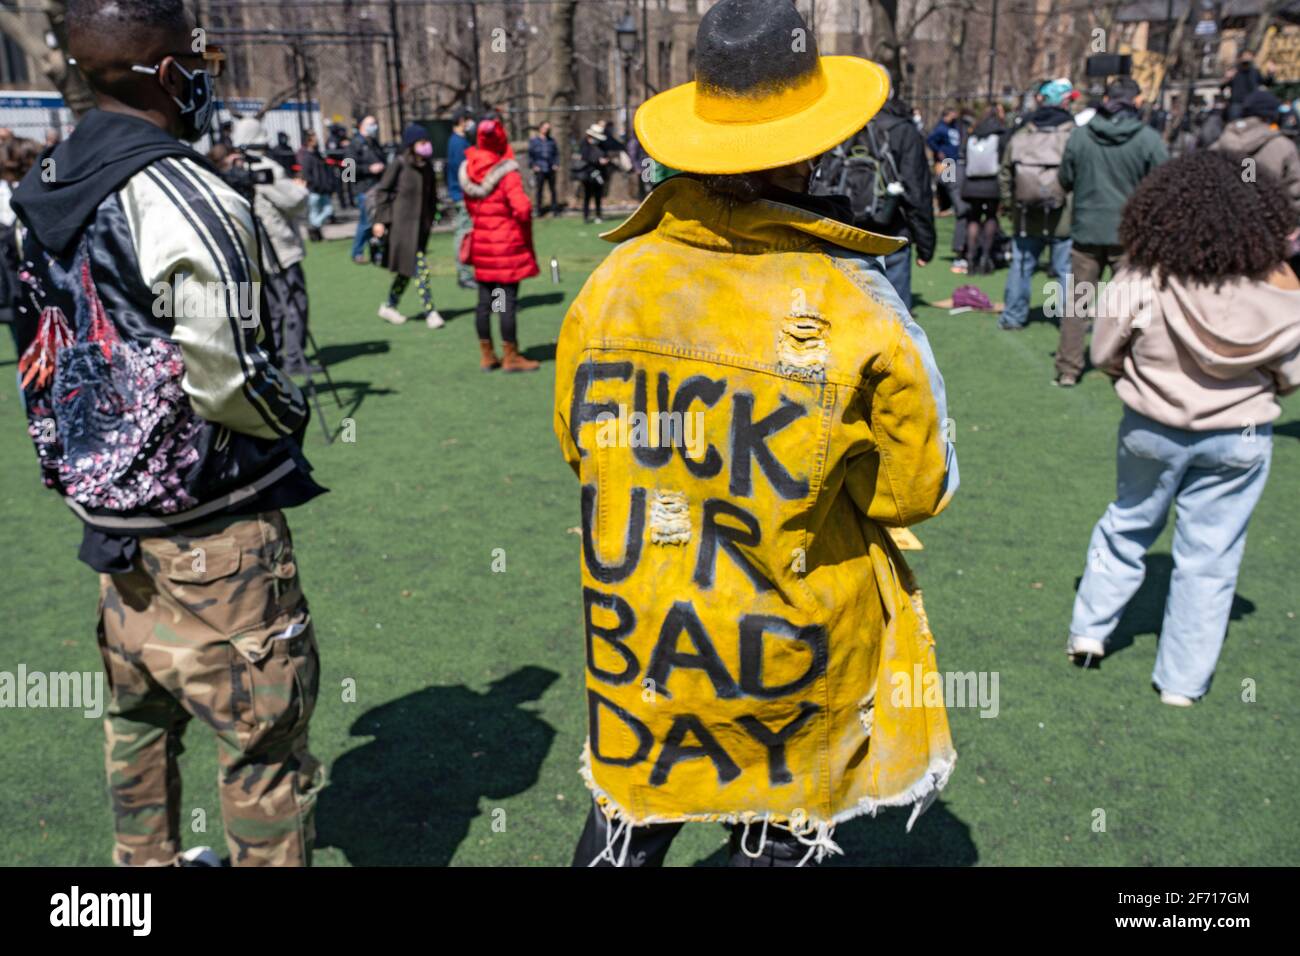 NEW YORK, NY - 3 APRILE: Una donna indossa un cappotto che recita "scopare u r Bad day" in un raduno contro l'odio a Columbus Park nel quartiere Chinatown di Manhattan il 3 aprile 2021 a New York City. Un raduno per la solidarietà è stato organizzato in risposta ad un aumento dei crimini di odio contro la comunità asiatica dall'inizio della pandemia del coronavirus (COVID-19) nel 2020. Il 16 marzo ad Atlanta, in Georgia, un uomo è andato a sparare in tre spa che hanno lasciato otto persone morte, tra cui sei donne asiatiche. Foto Stock